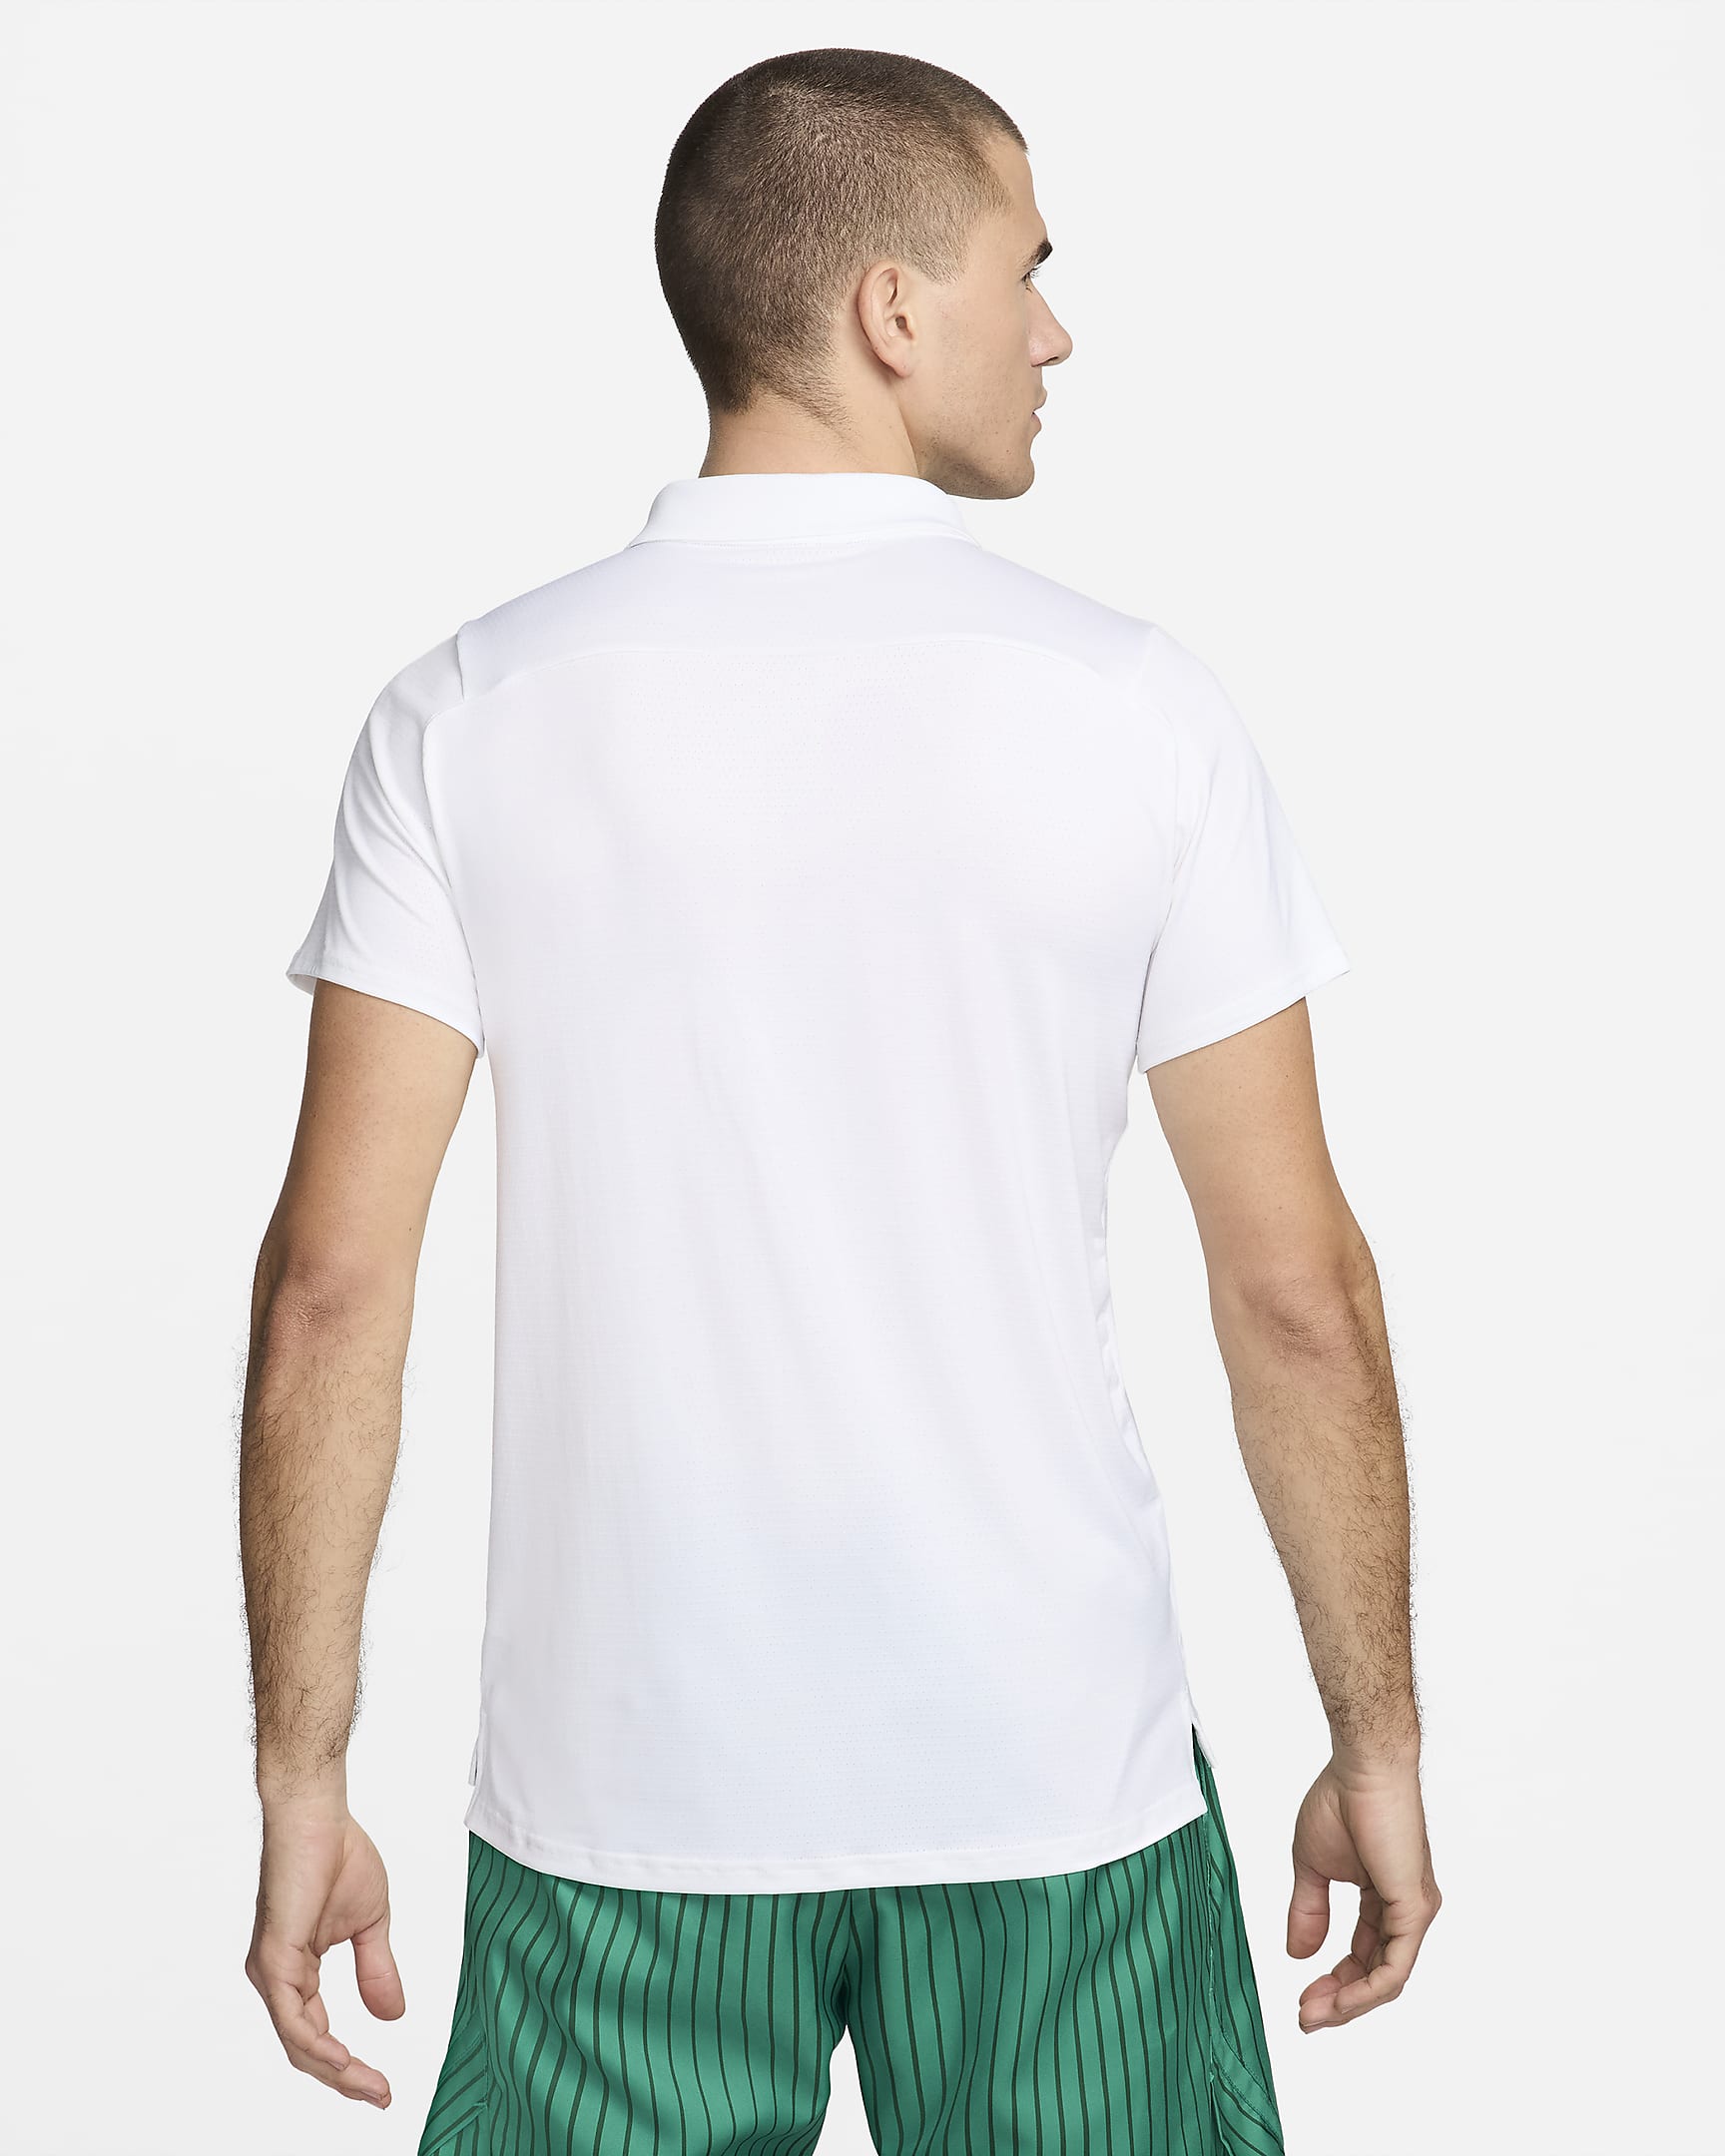 NikeCourt Advantage Men's Tennis Polo - White/Malachite